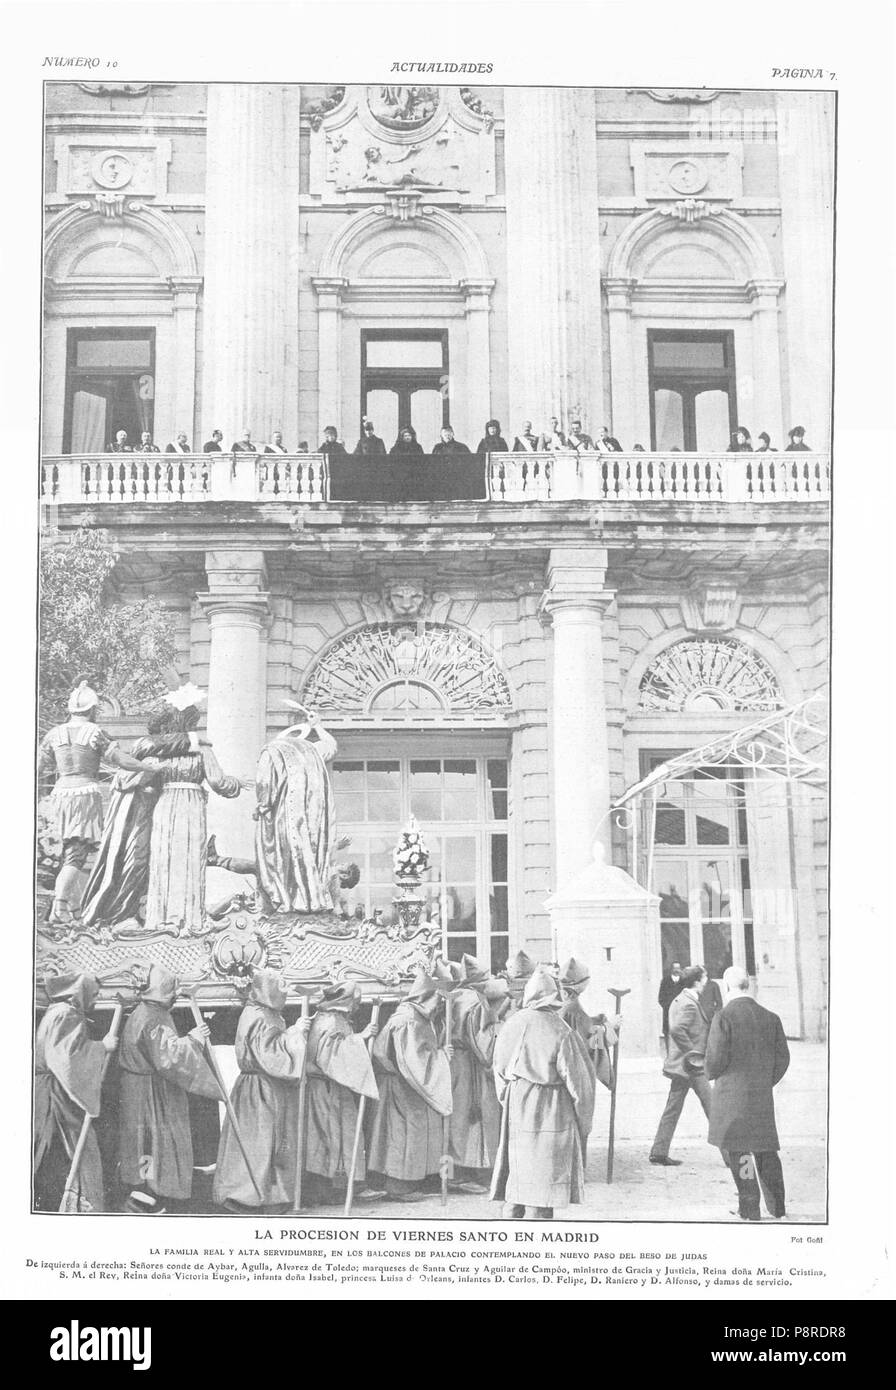 15 1908-04-23, Actualidades, La procesión de Viernes Santo en Madrid, Goñi Stock Photo